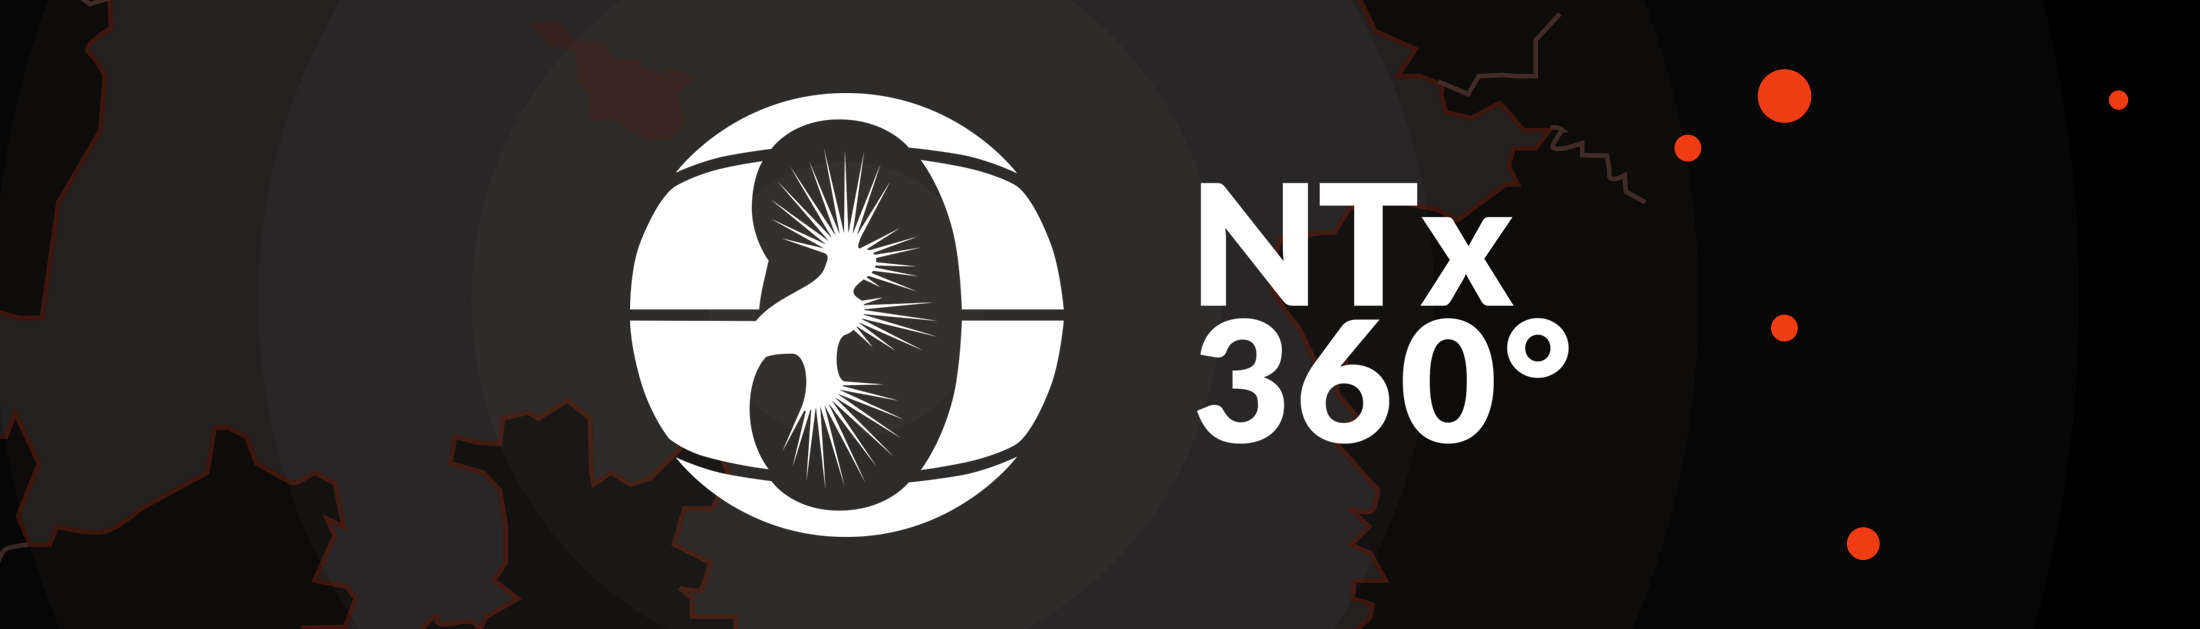 Logo & Website – med. Innovationsprojekt NTx360°